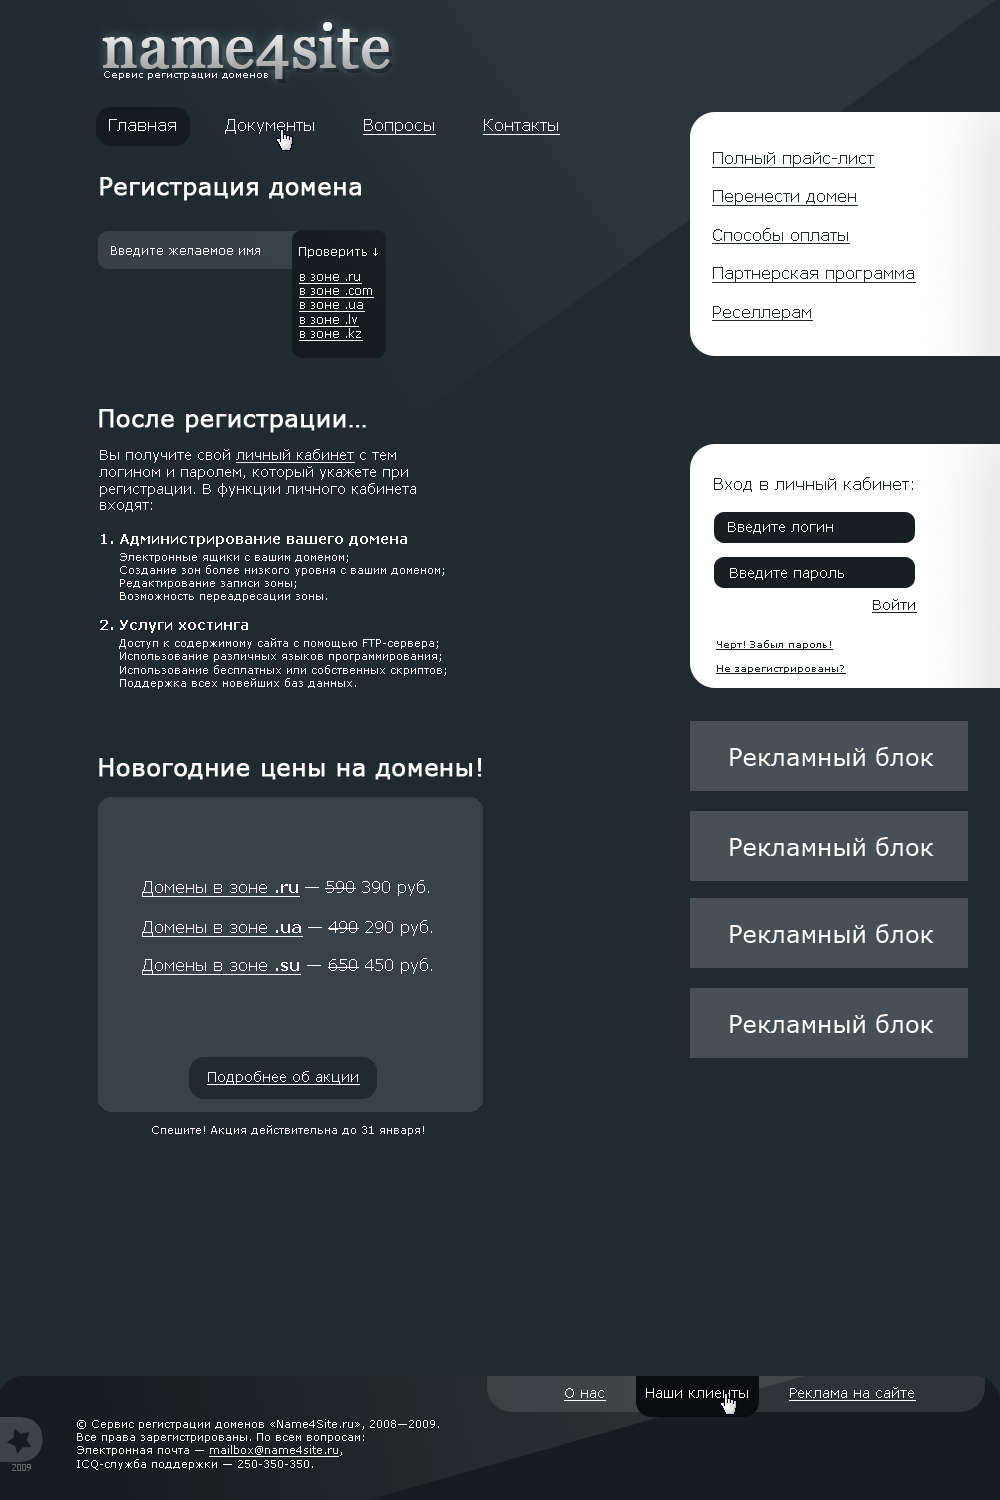 «Name4site.ru» — сервис регистрации доменов.